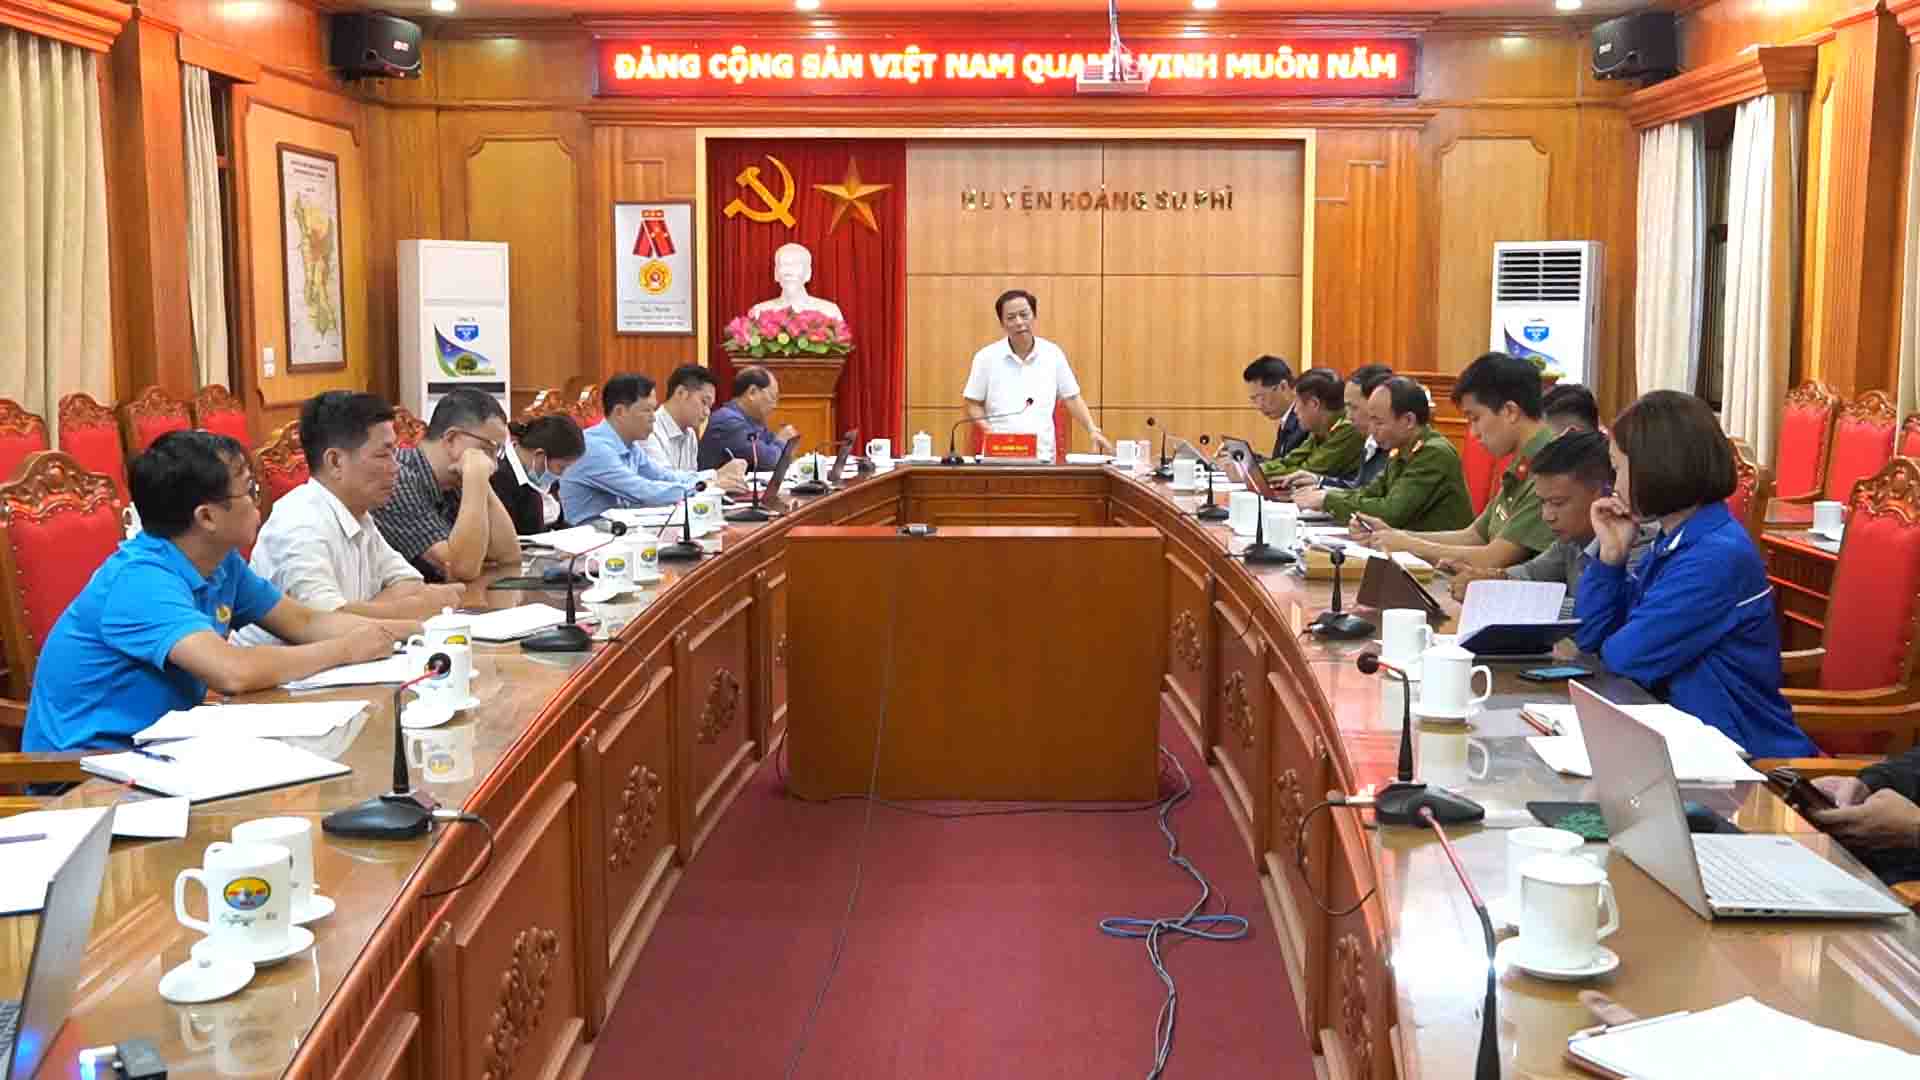 BCĐ 138 tỉnh làm việc tại huyện Hoàng Su Phì